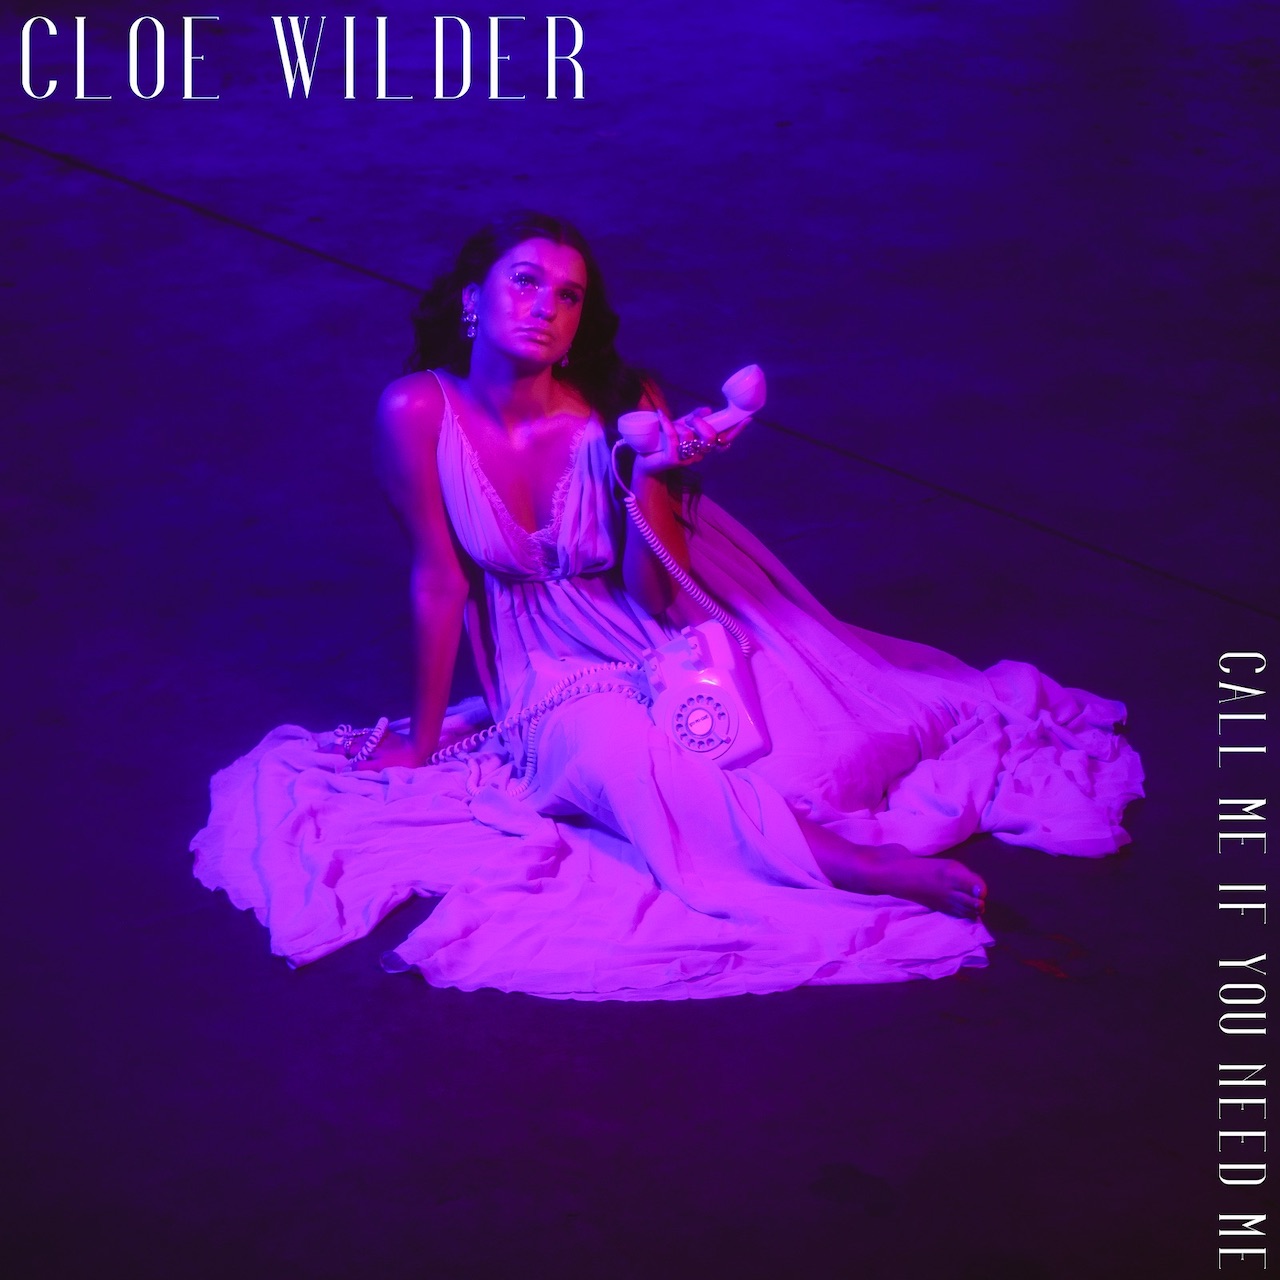 Cloe-Wilder-CMIYNM.jpg